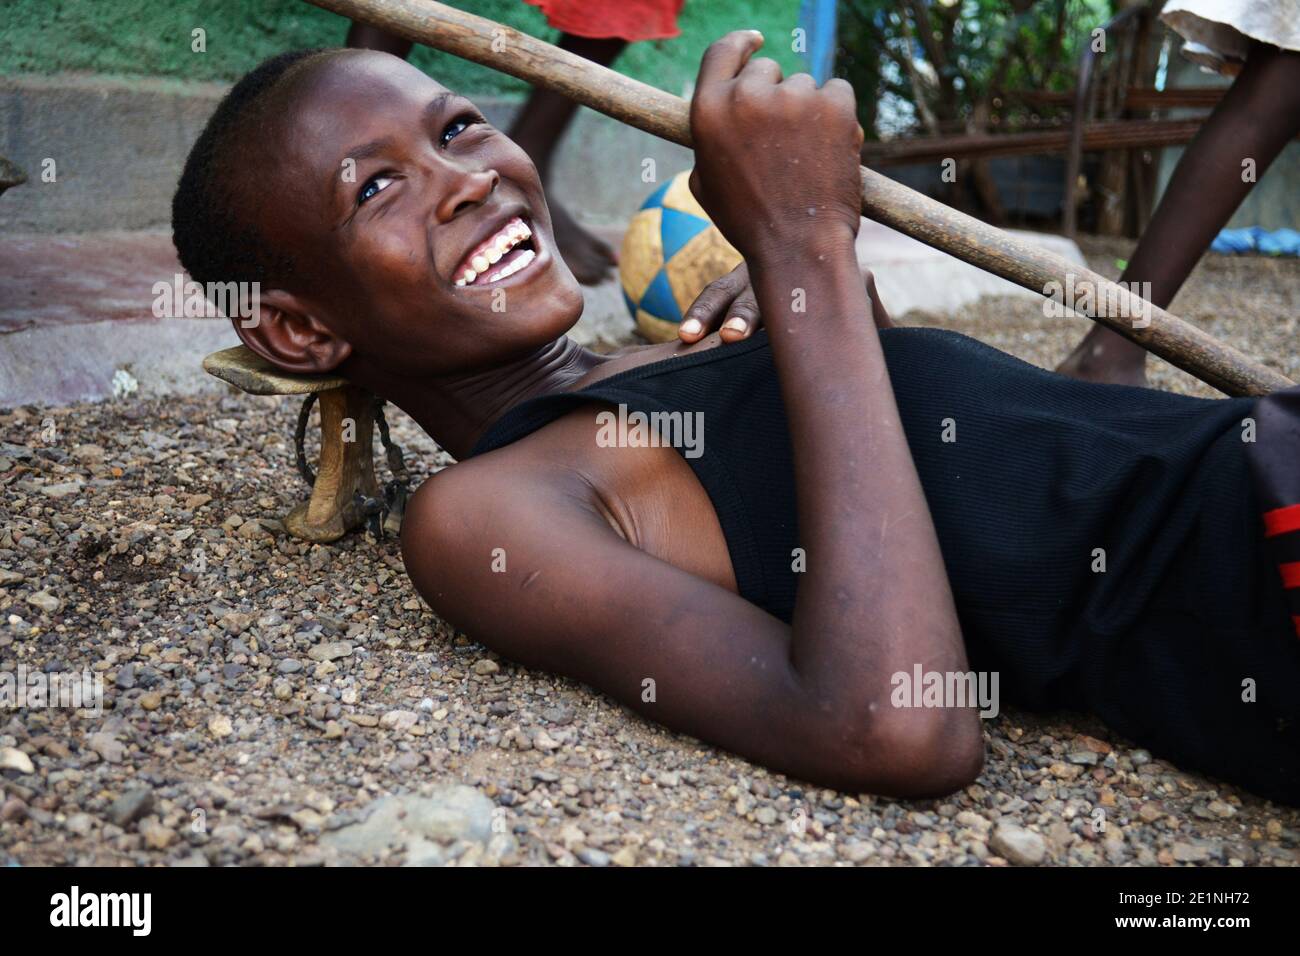 Portrait d'un adolescent kenyan de la tribu Turkana posant avec un bâton et un stand de tête utilisé par les pasteurs locaux. Prise dans la ville de Kakuma au Kenya. Banque D'Images